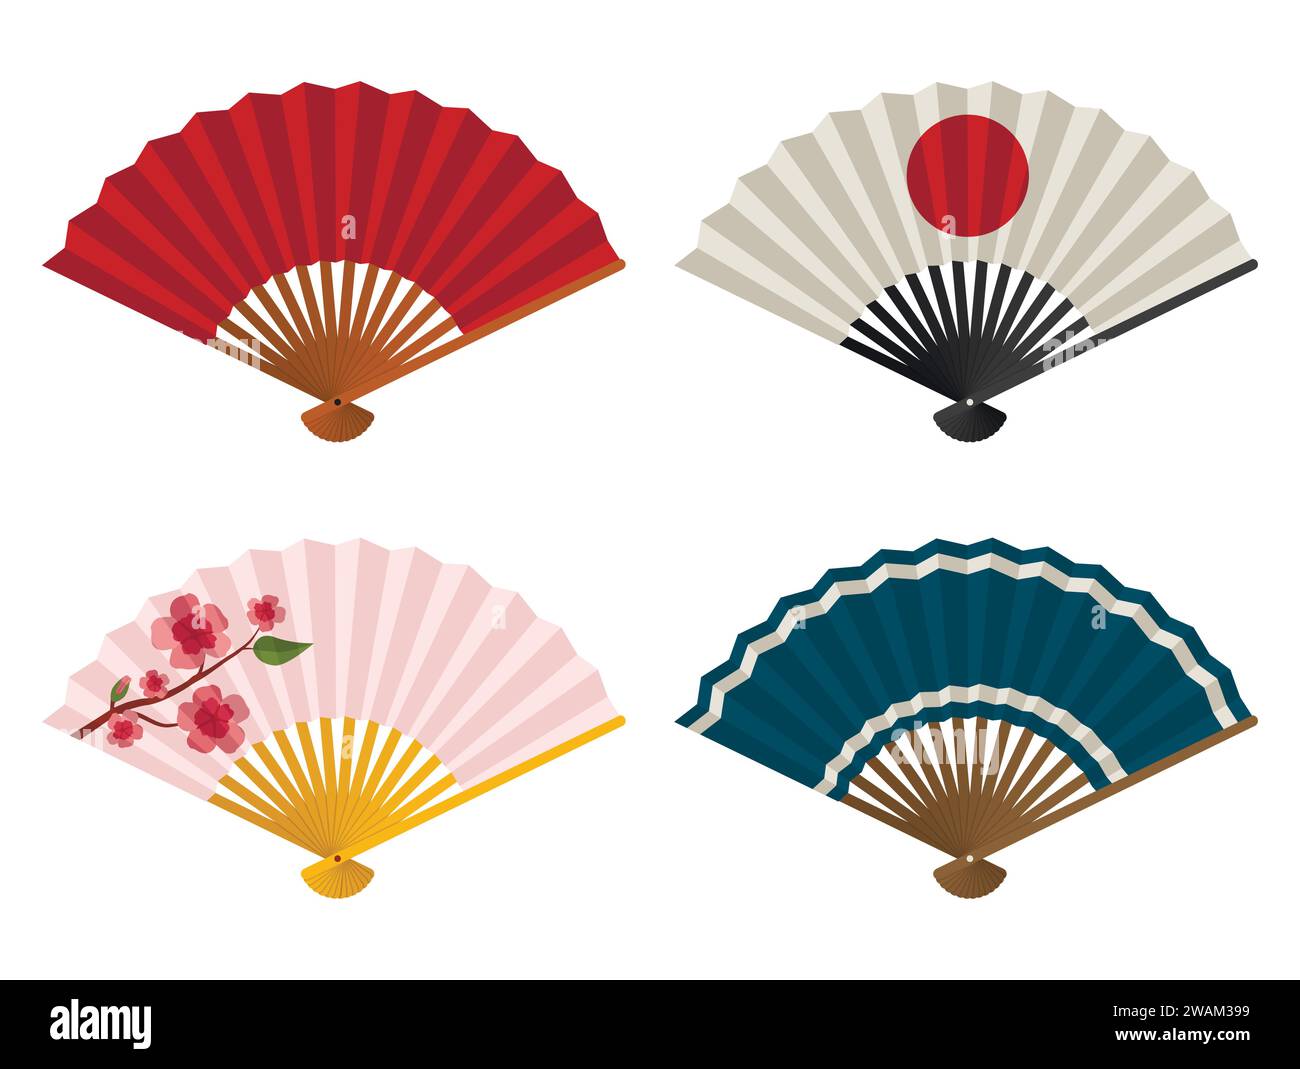 Handventilatoren, isoliert auf weißem Hintergrund, japanischer und chinesischer Faltfächer, traditioneller asiatischer Papier Geisha Fächer. Vektorgrafik Stock Vektor